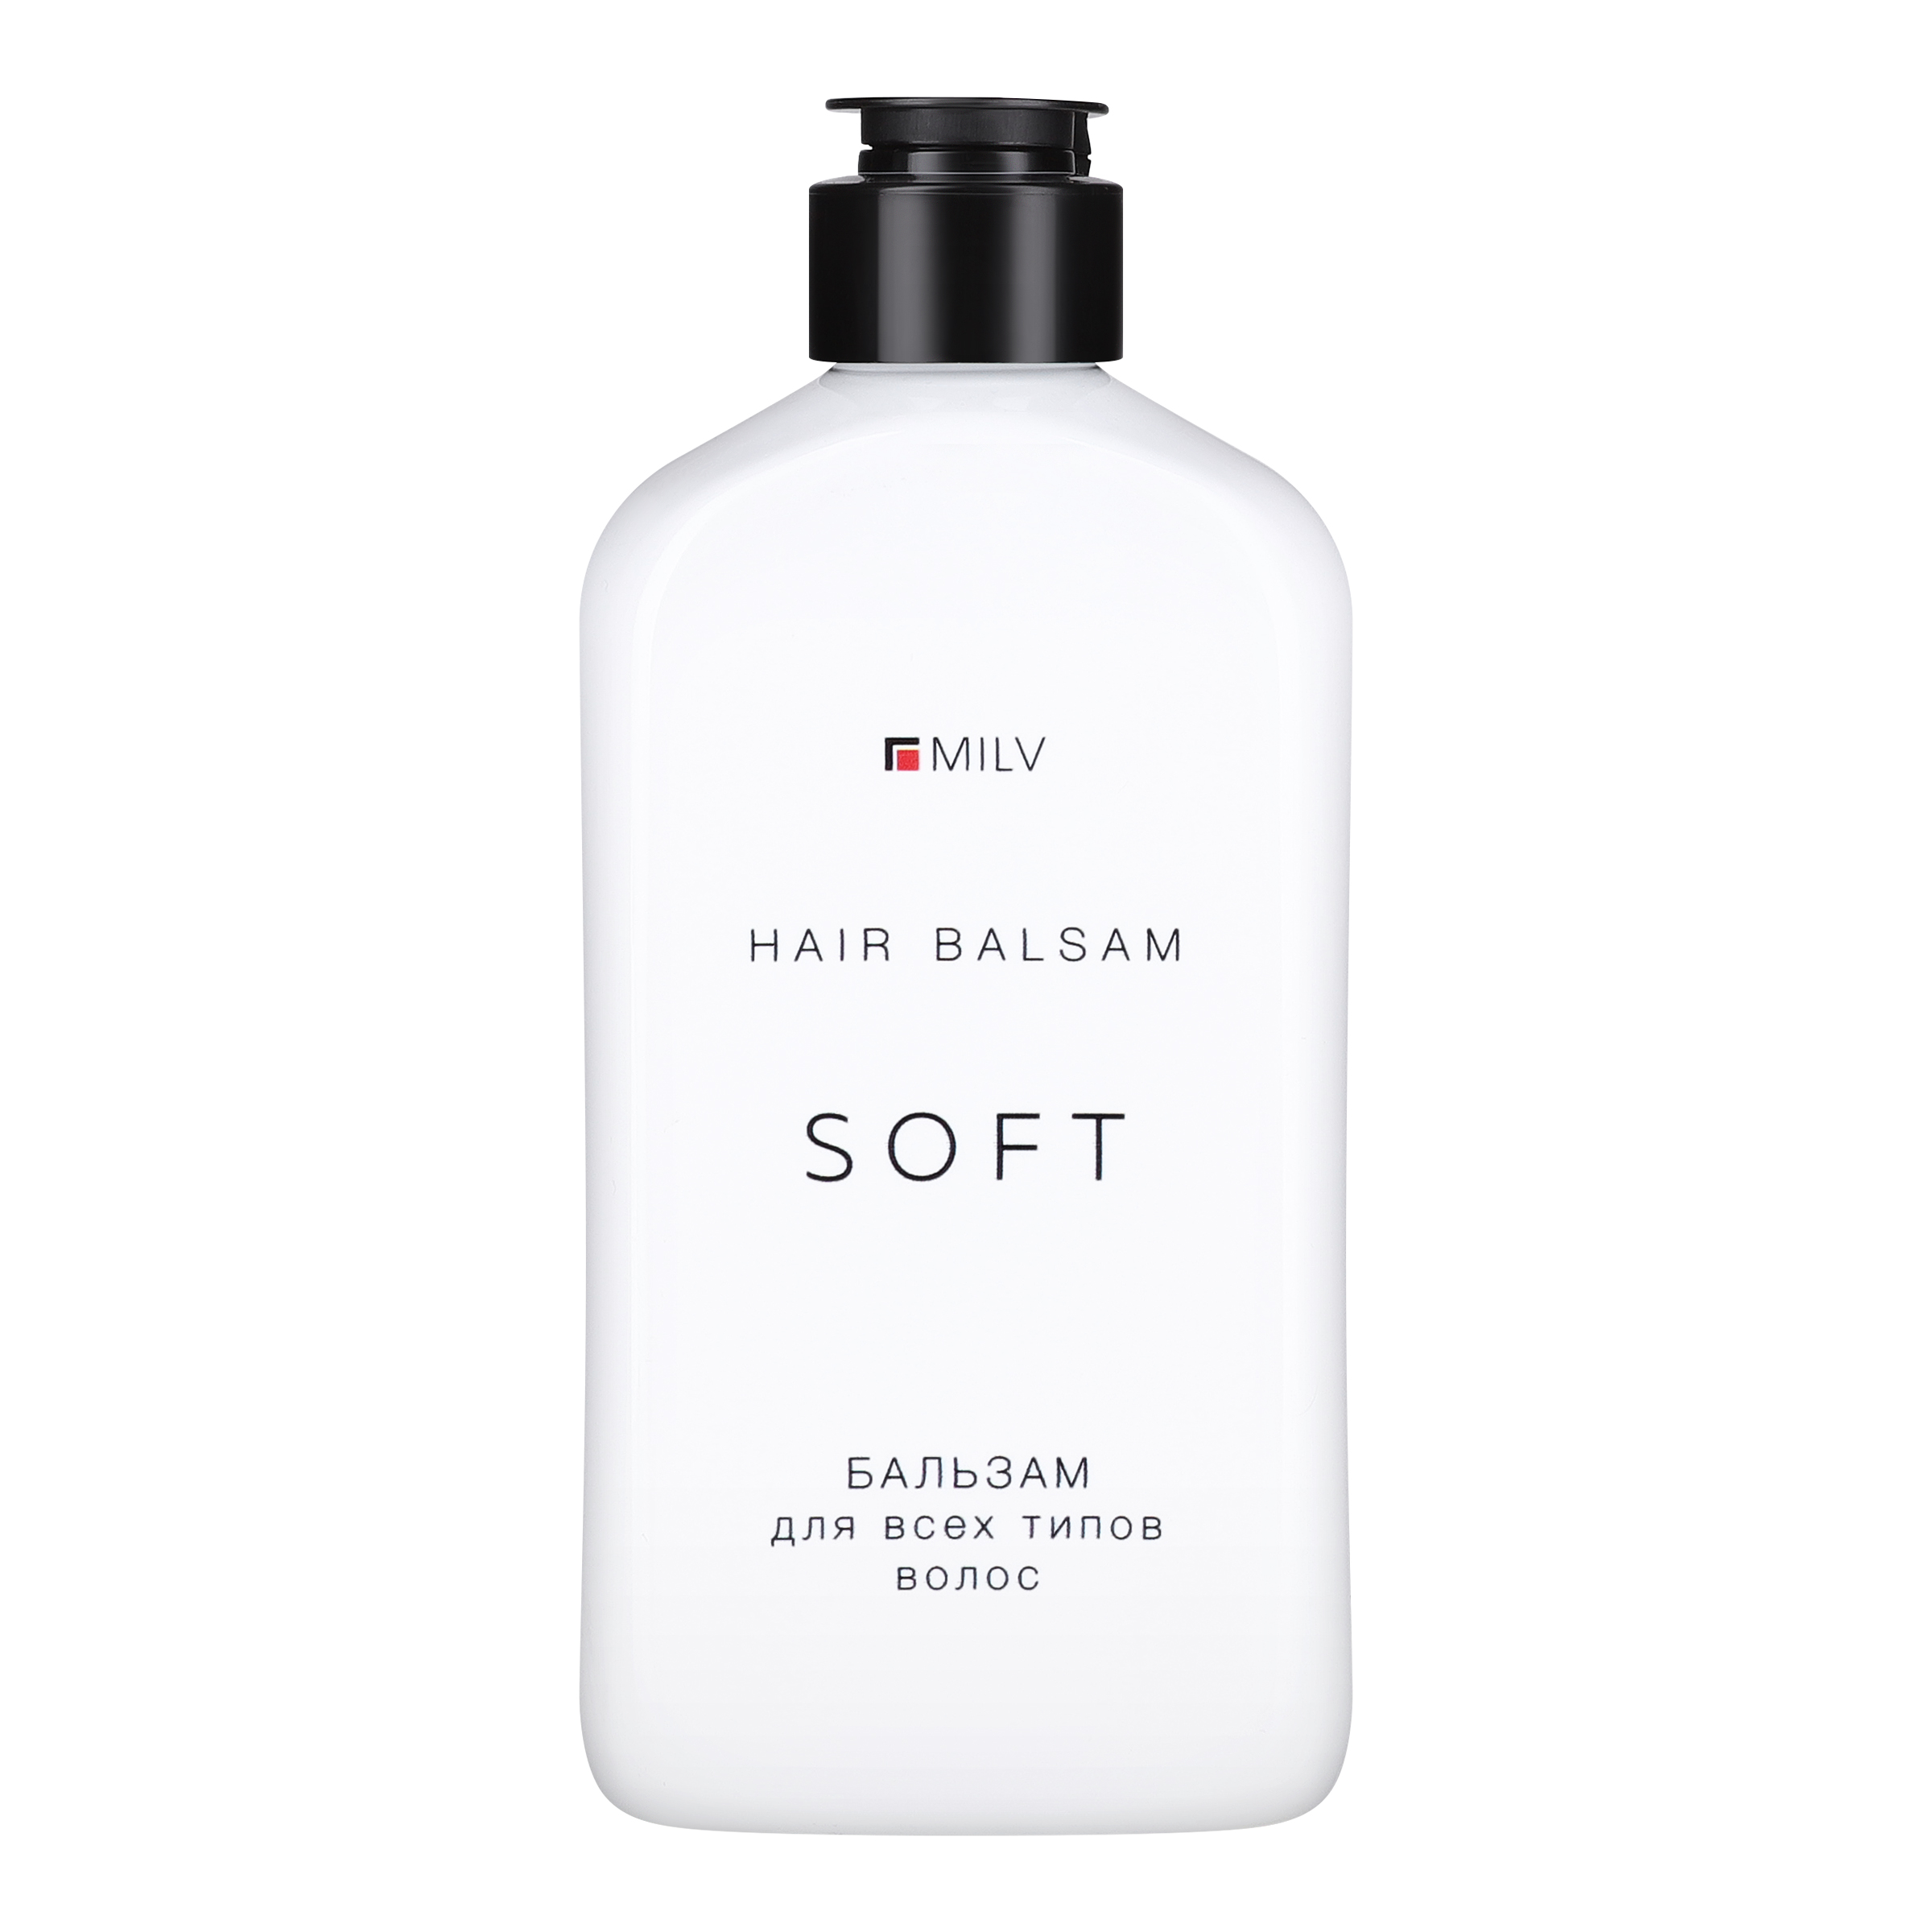 Мягкий бальзам Milv SOFT для всех типов волос 340 мл eveline бальзам для губ bio extra soft 4 5